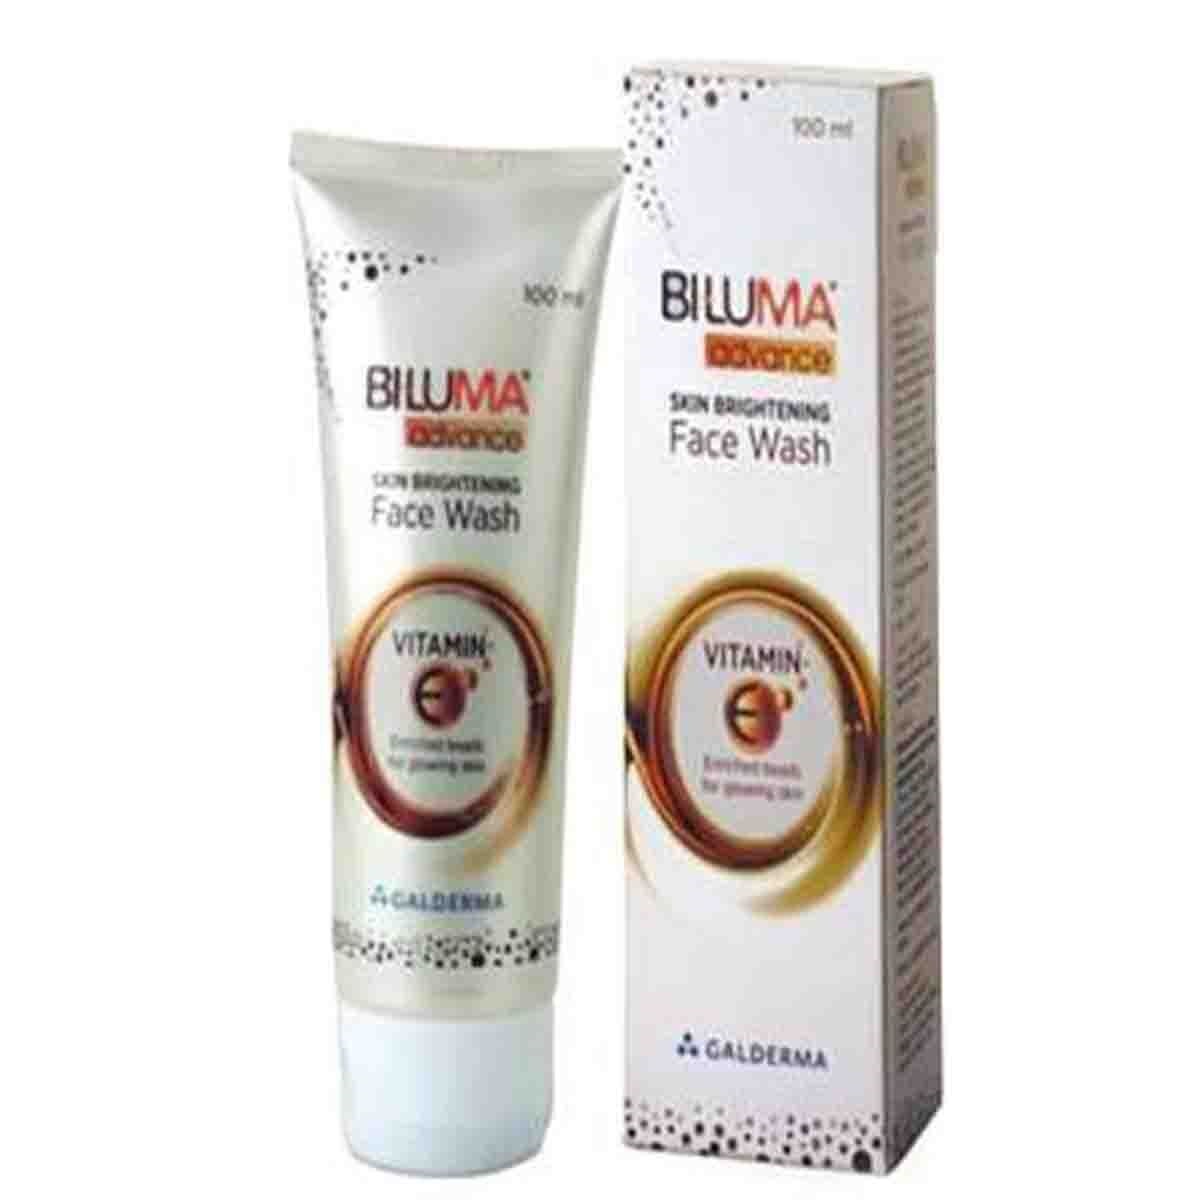 BILUMA Advance Skin Brightening Face Wash - 100ml